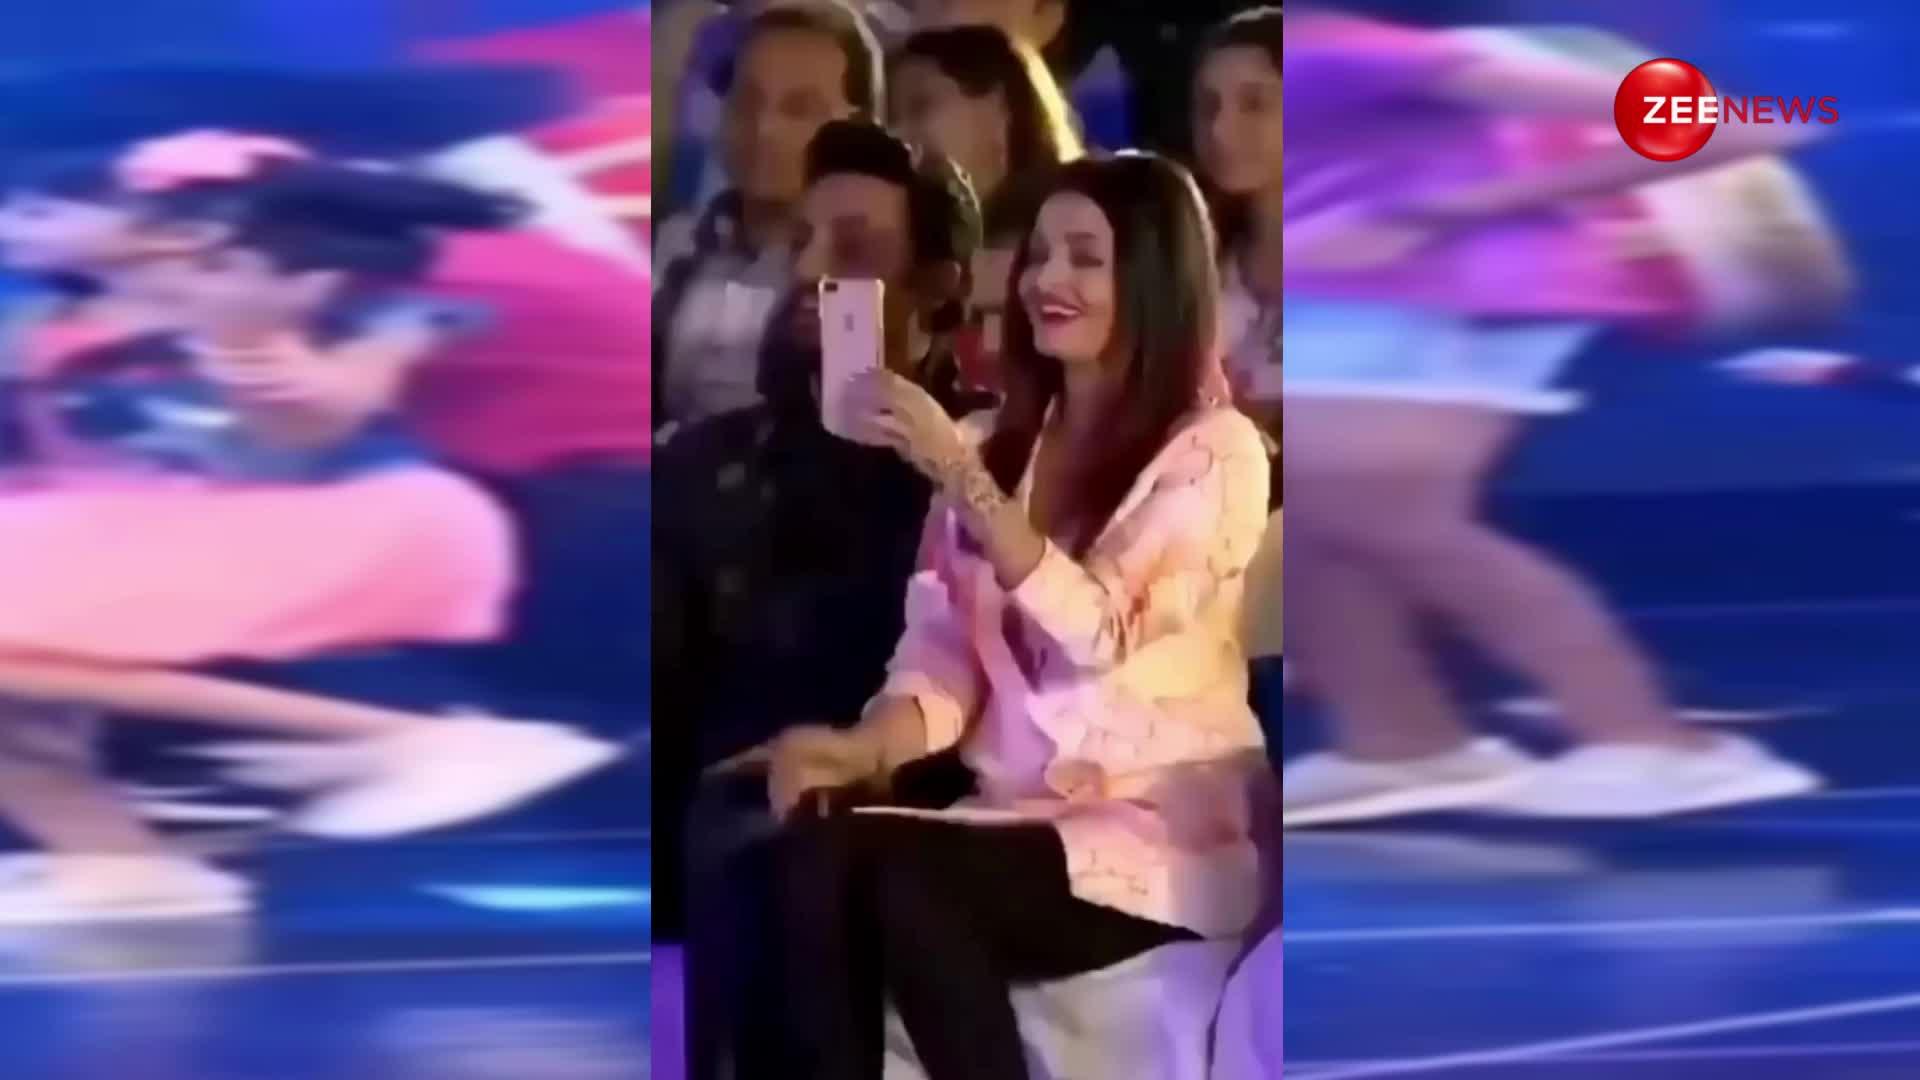 सलमान खान के गाने पर Aishwarya Rai की बेटी Aaradhya Bachchan ने किया धमाकेदार डांस, लोगों ने जमकर वायरल किया वीडियो